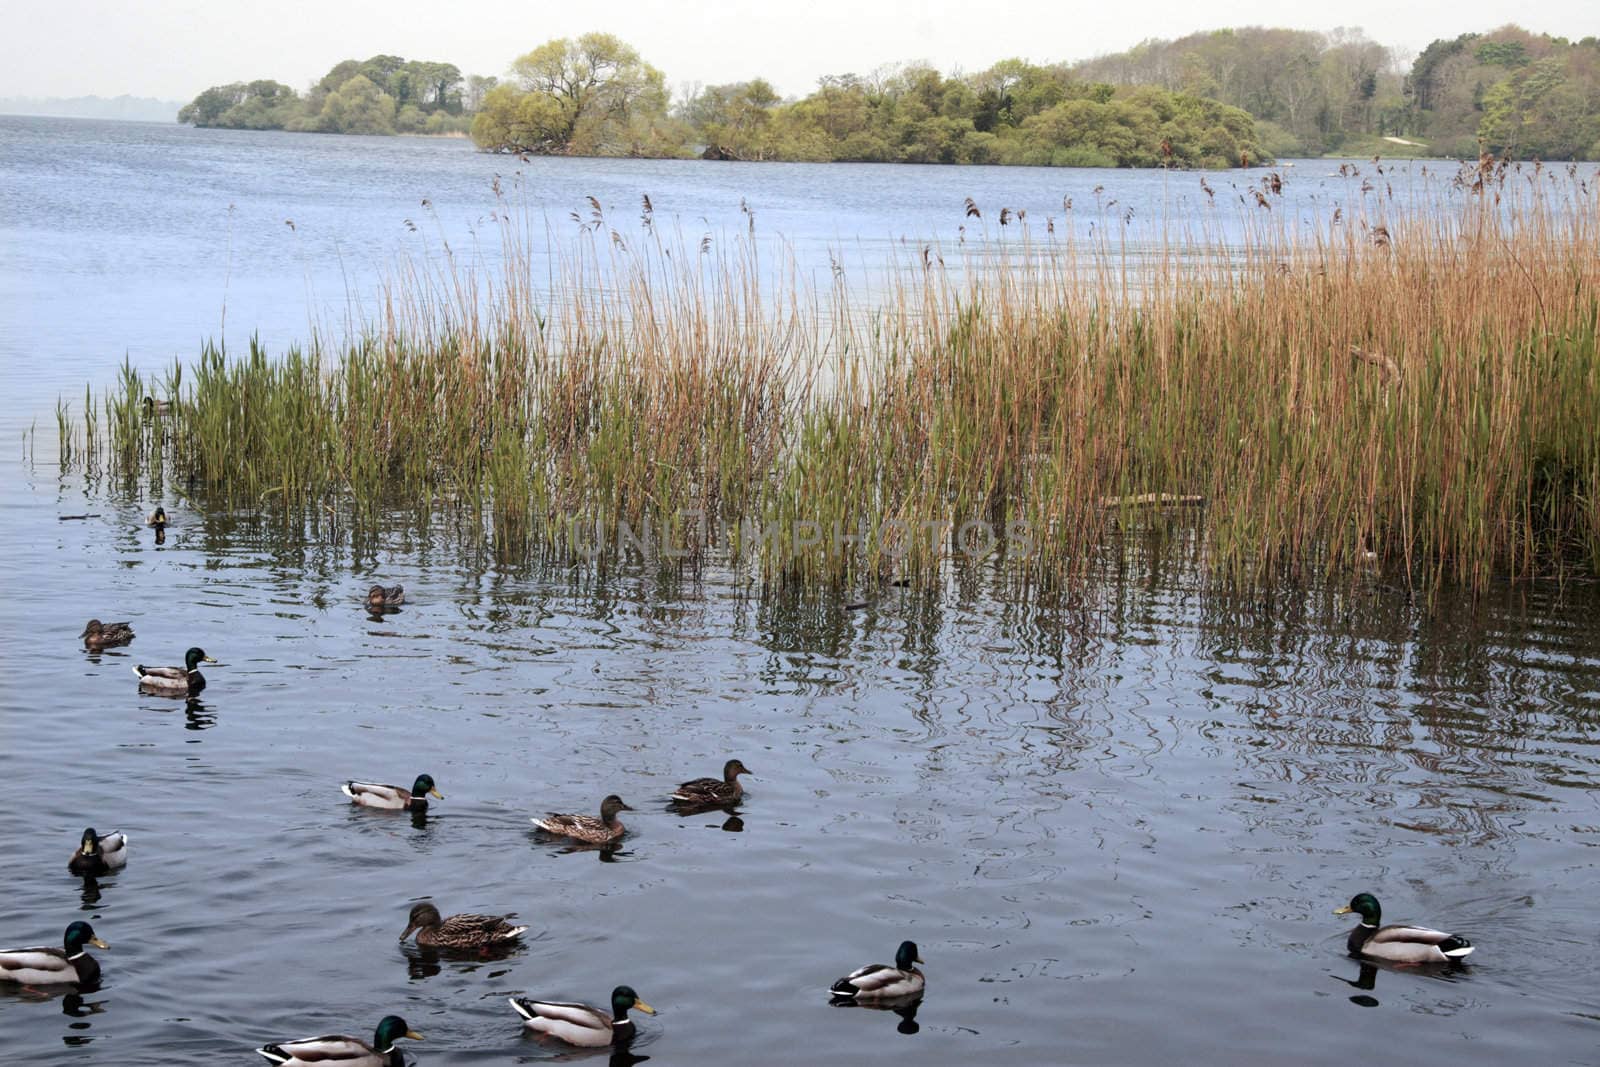 ducks swimming in a lake